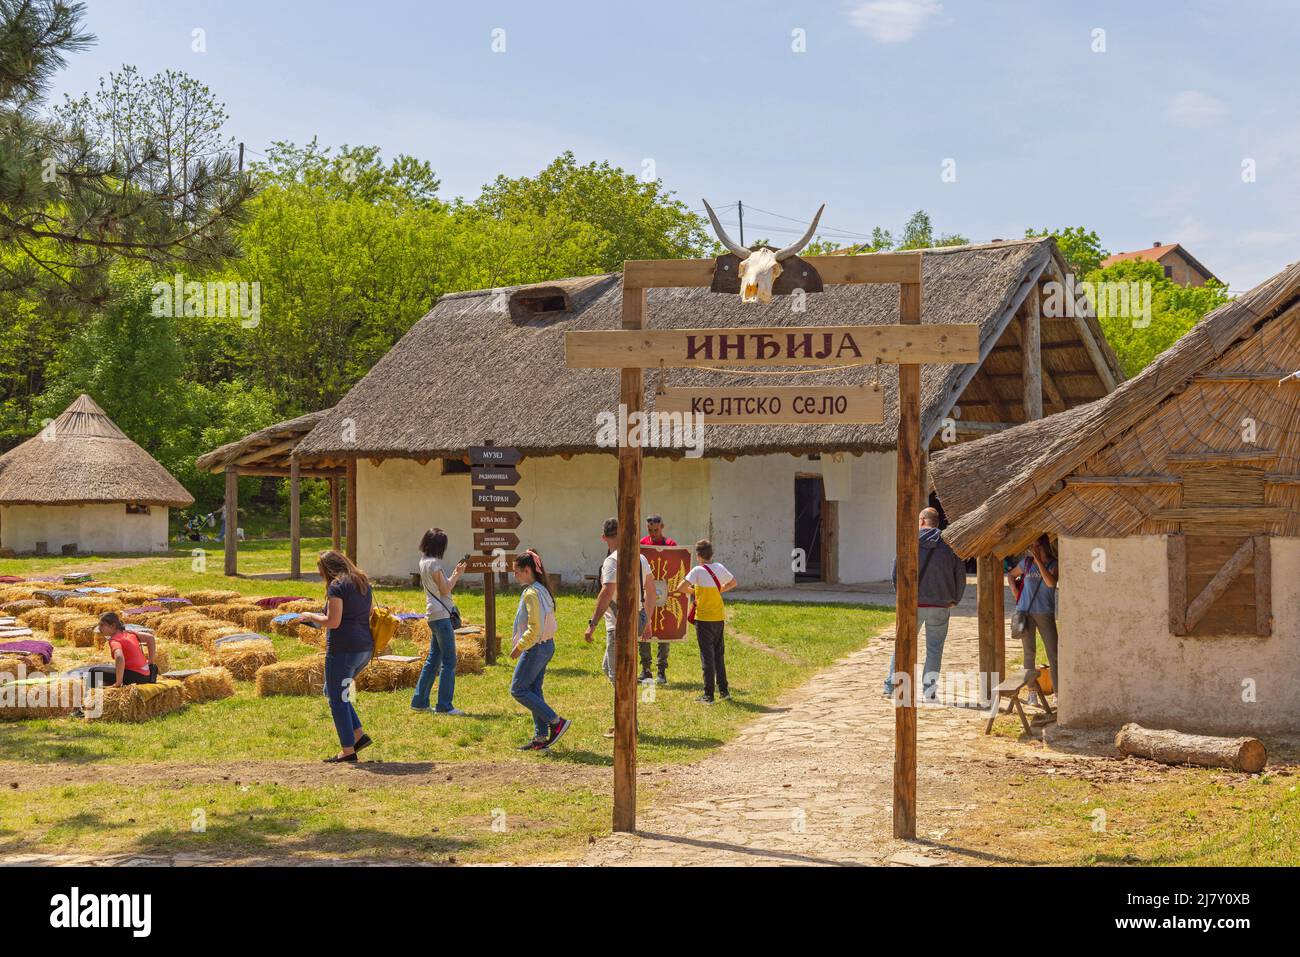 Indjija, Serbia - 08 maggio 2022: Attrazione Turista del Villaggio Celtico e Museo storico al giorno della Primavera del Sole. Foto Stock